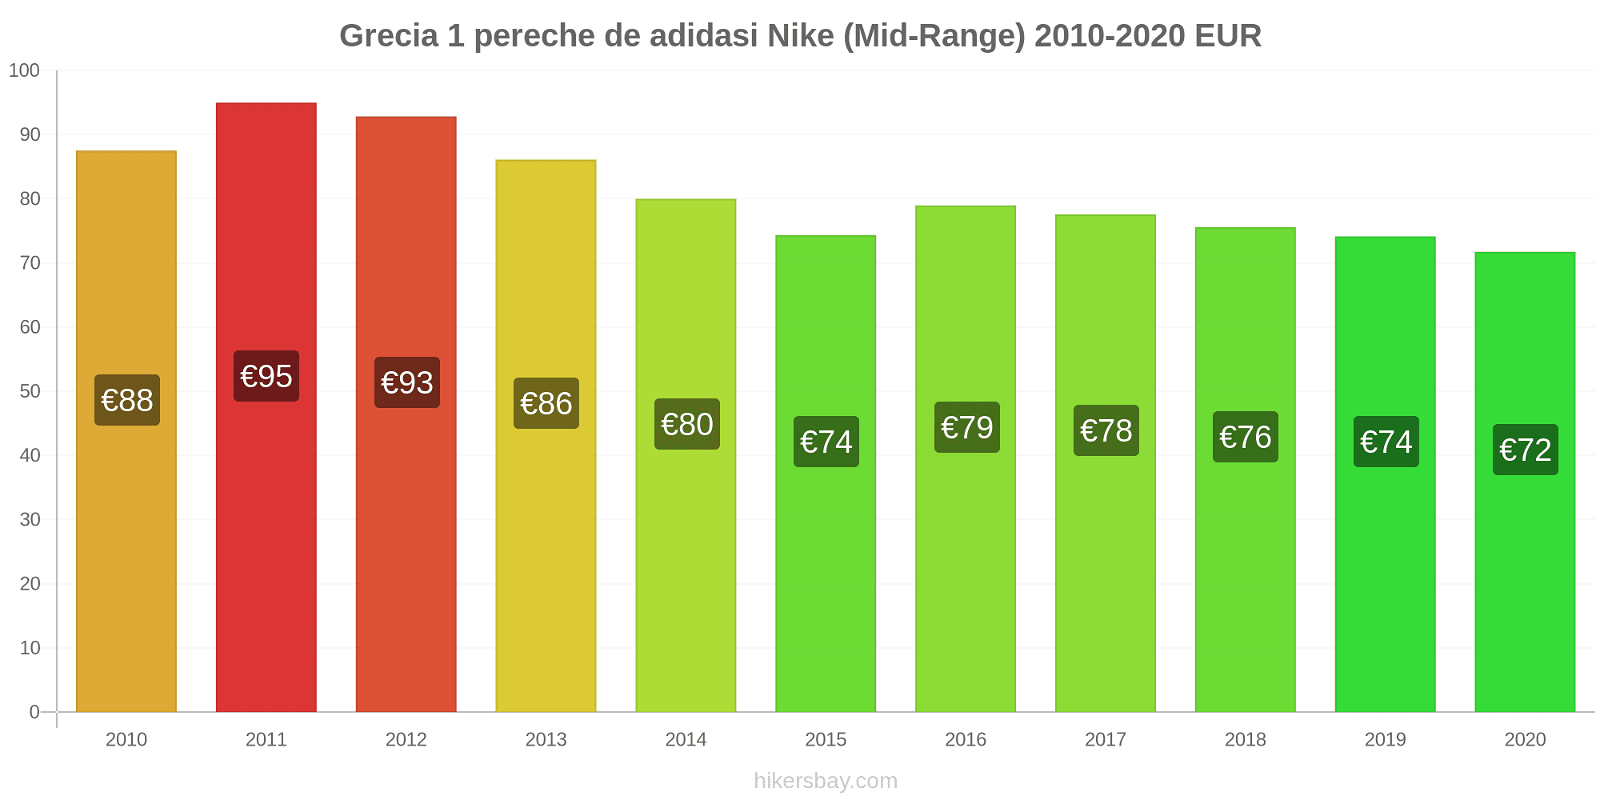 Grecia modificări de preț 1 pereche de adidasi Nike (Mid-Range) hikersbay.com